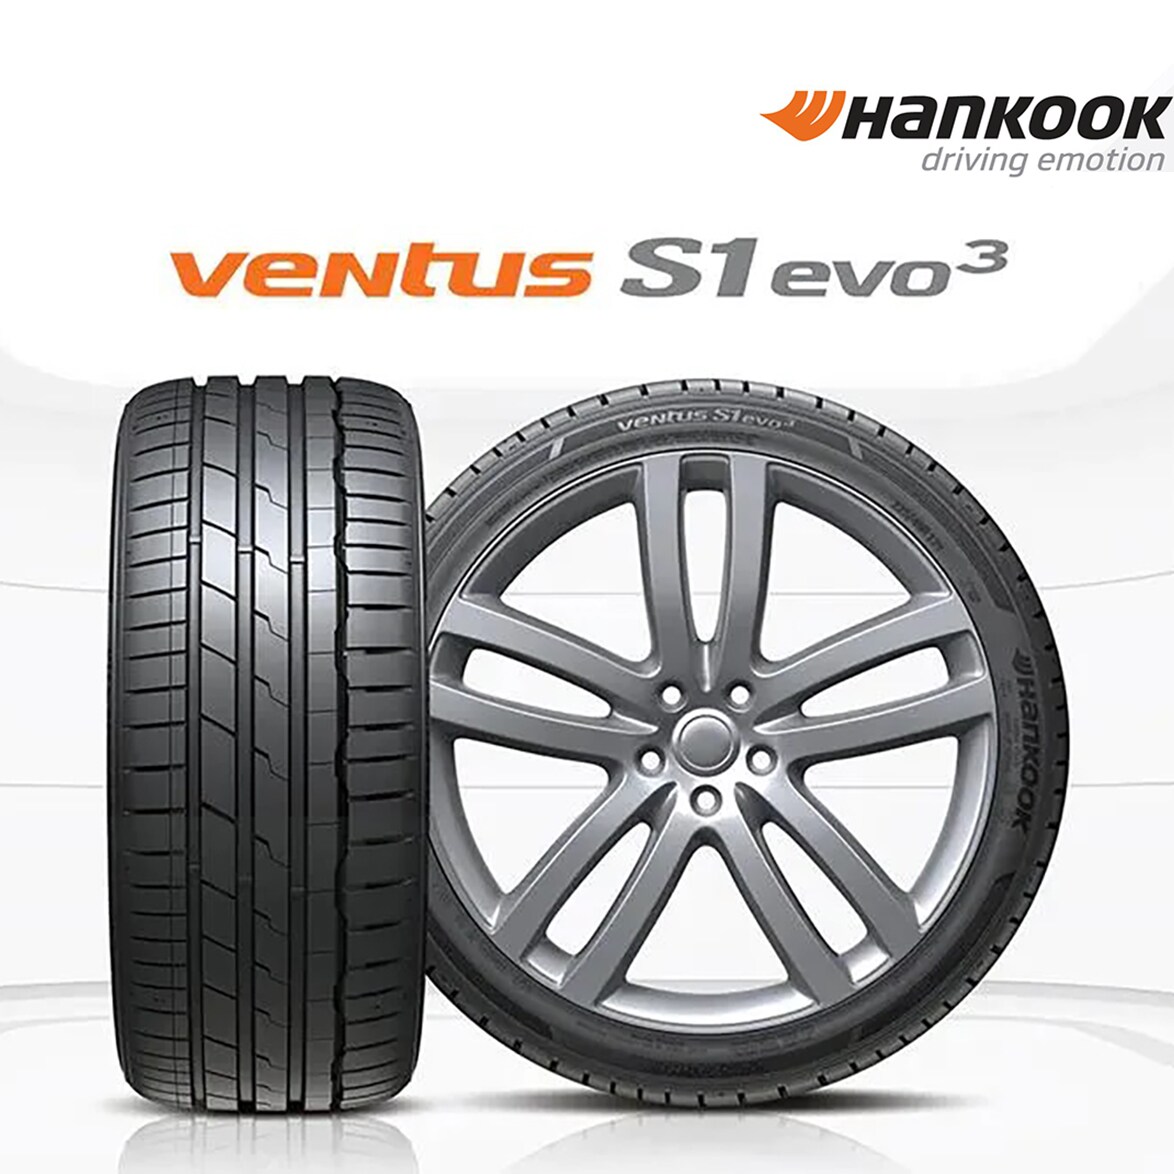 ハンコックタイヤ、サマータイヤ「Ventus S1 evo3」「Ventus S1 evo3